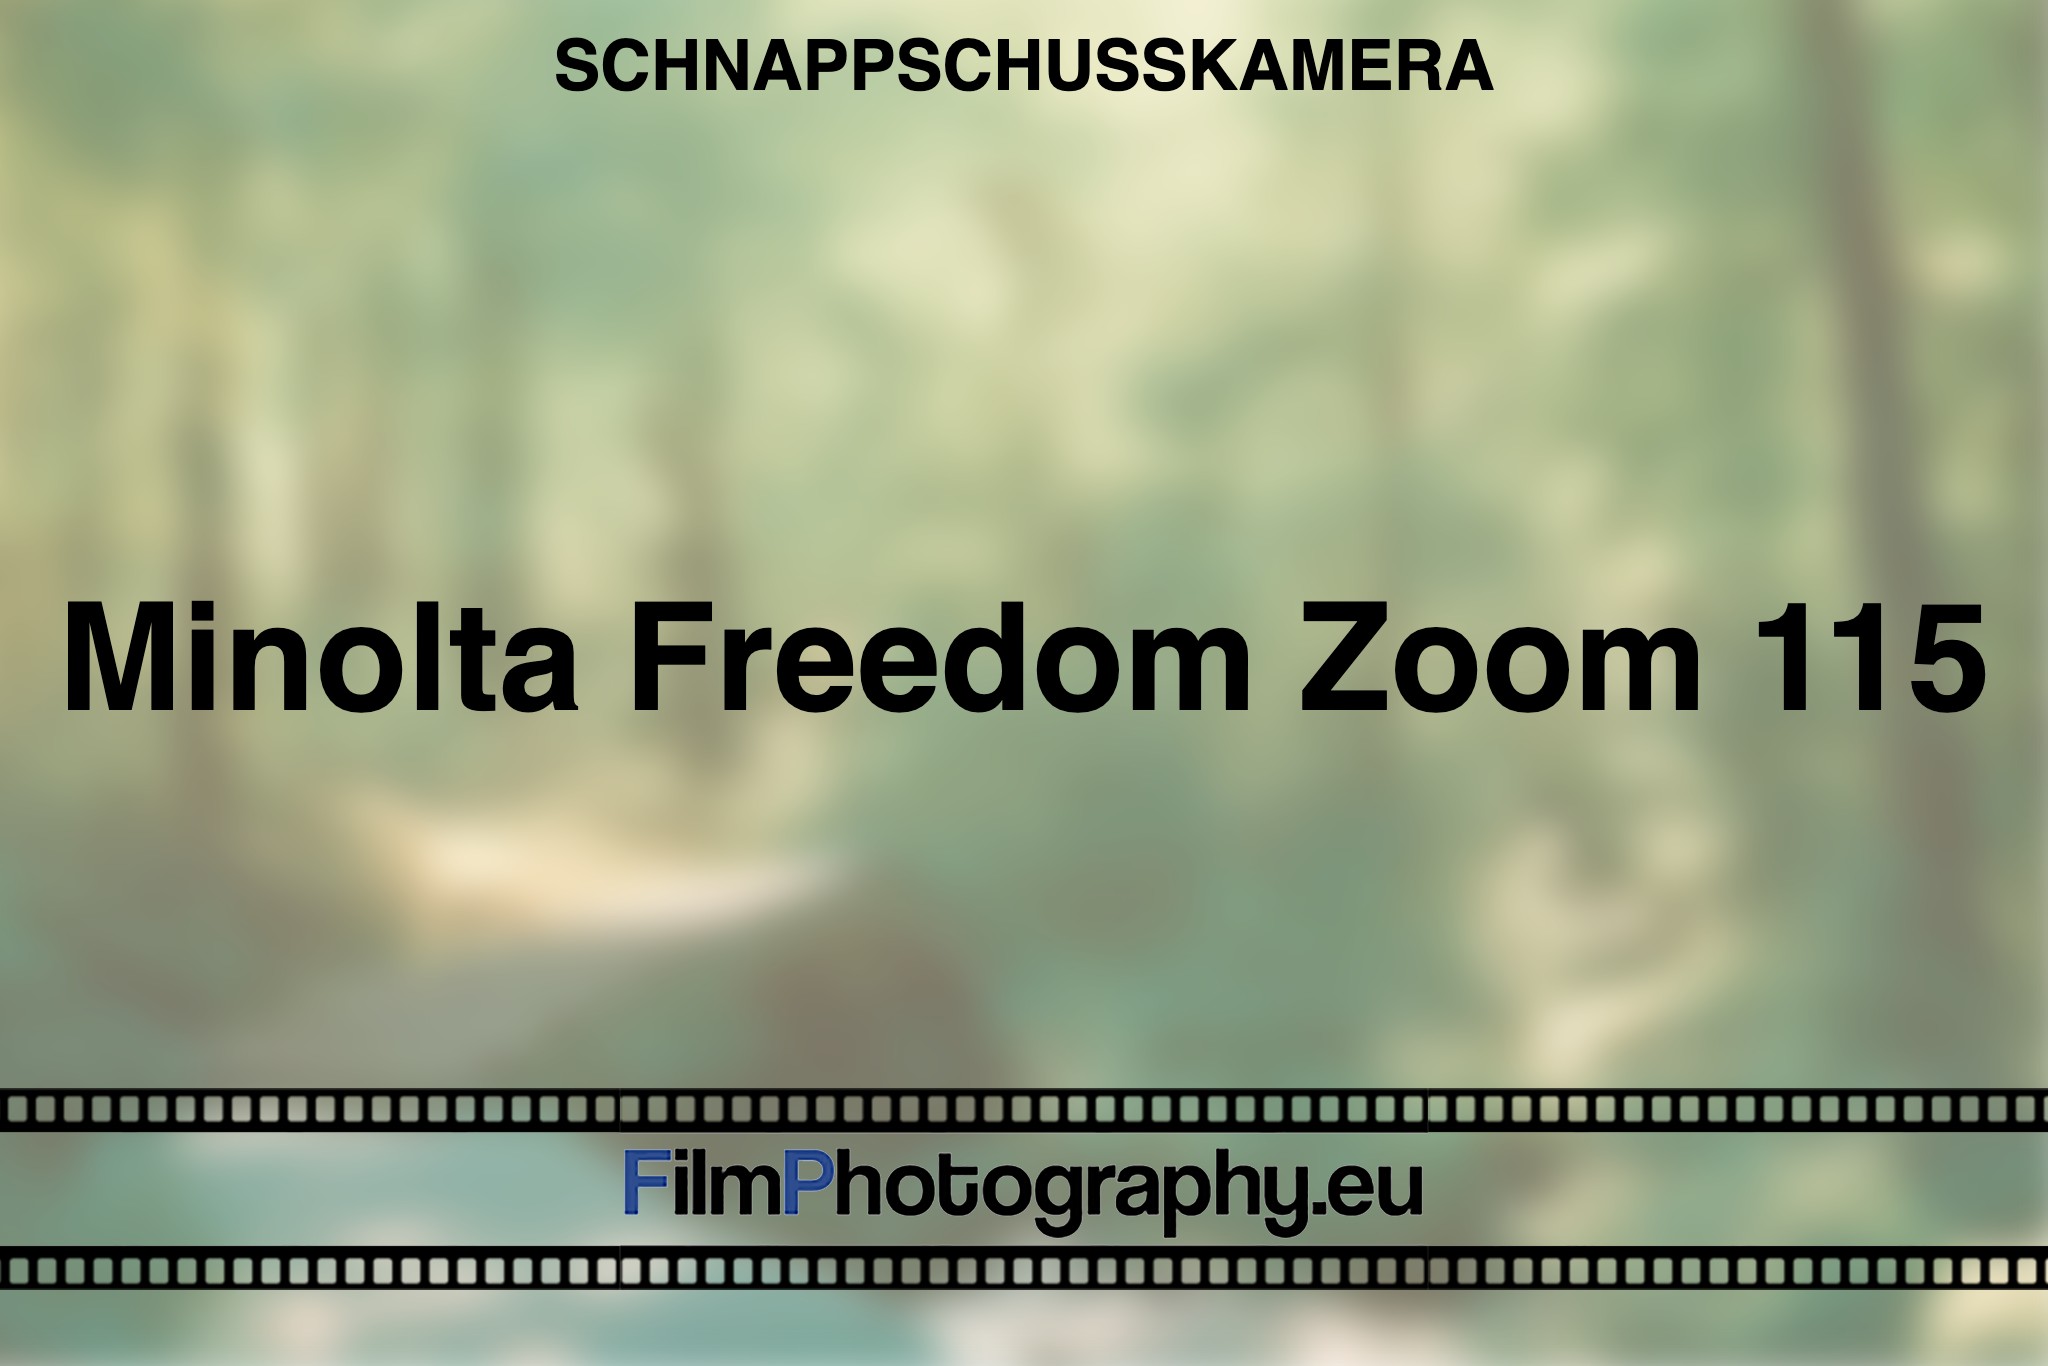 minolta-freedom-zoom-115-schnappschusskamera-bnv